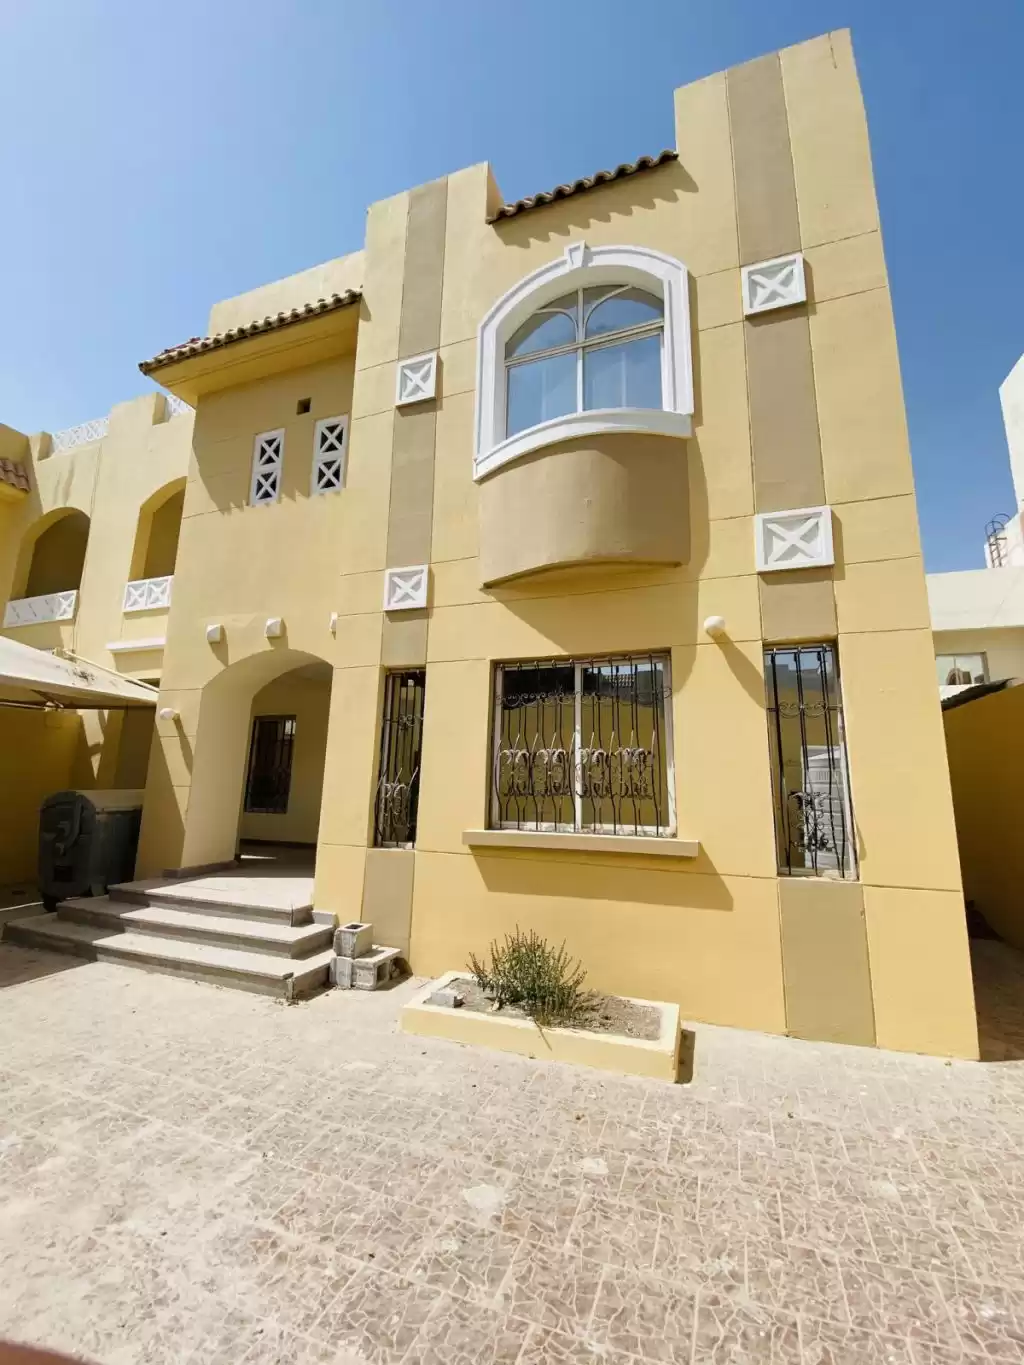 Résidentiel Propriété prête 7 chambres U / f Villa autonome  a louer au Al-Sadd , Doha #11205 - 1  image 